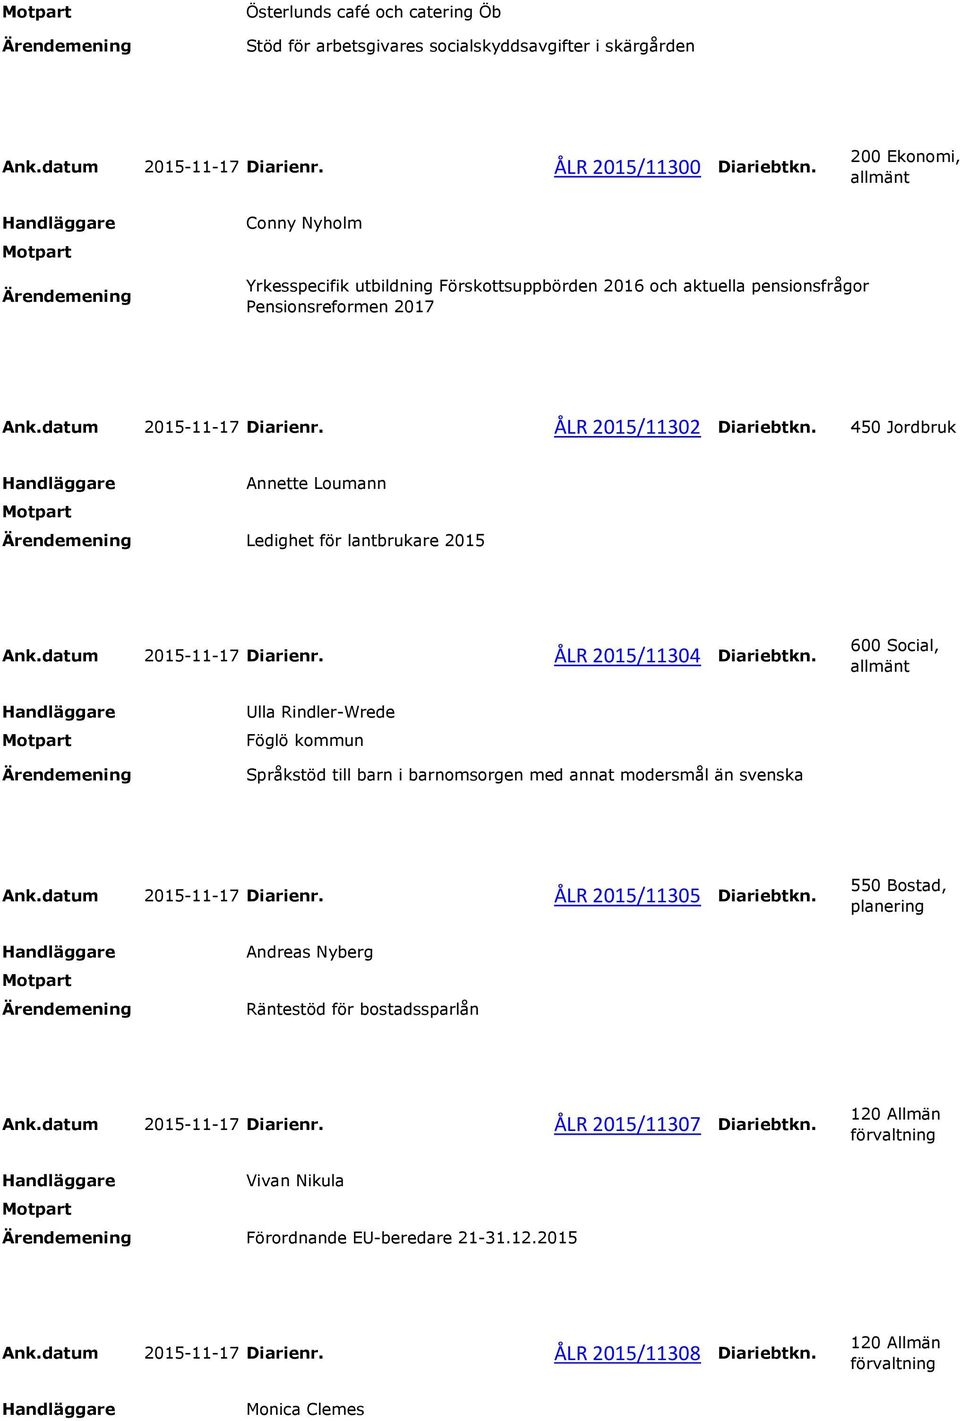 450 Jordbruk Annette Loumann Ledighet för lantbrukare 2015 Ank.datum 2015-11-17 Diarienr. ÅLR 2015/11304 Diariebtkn.